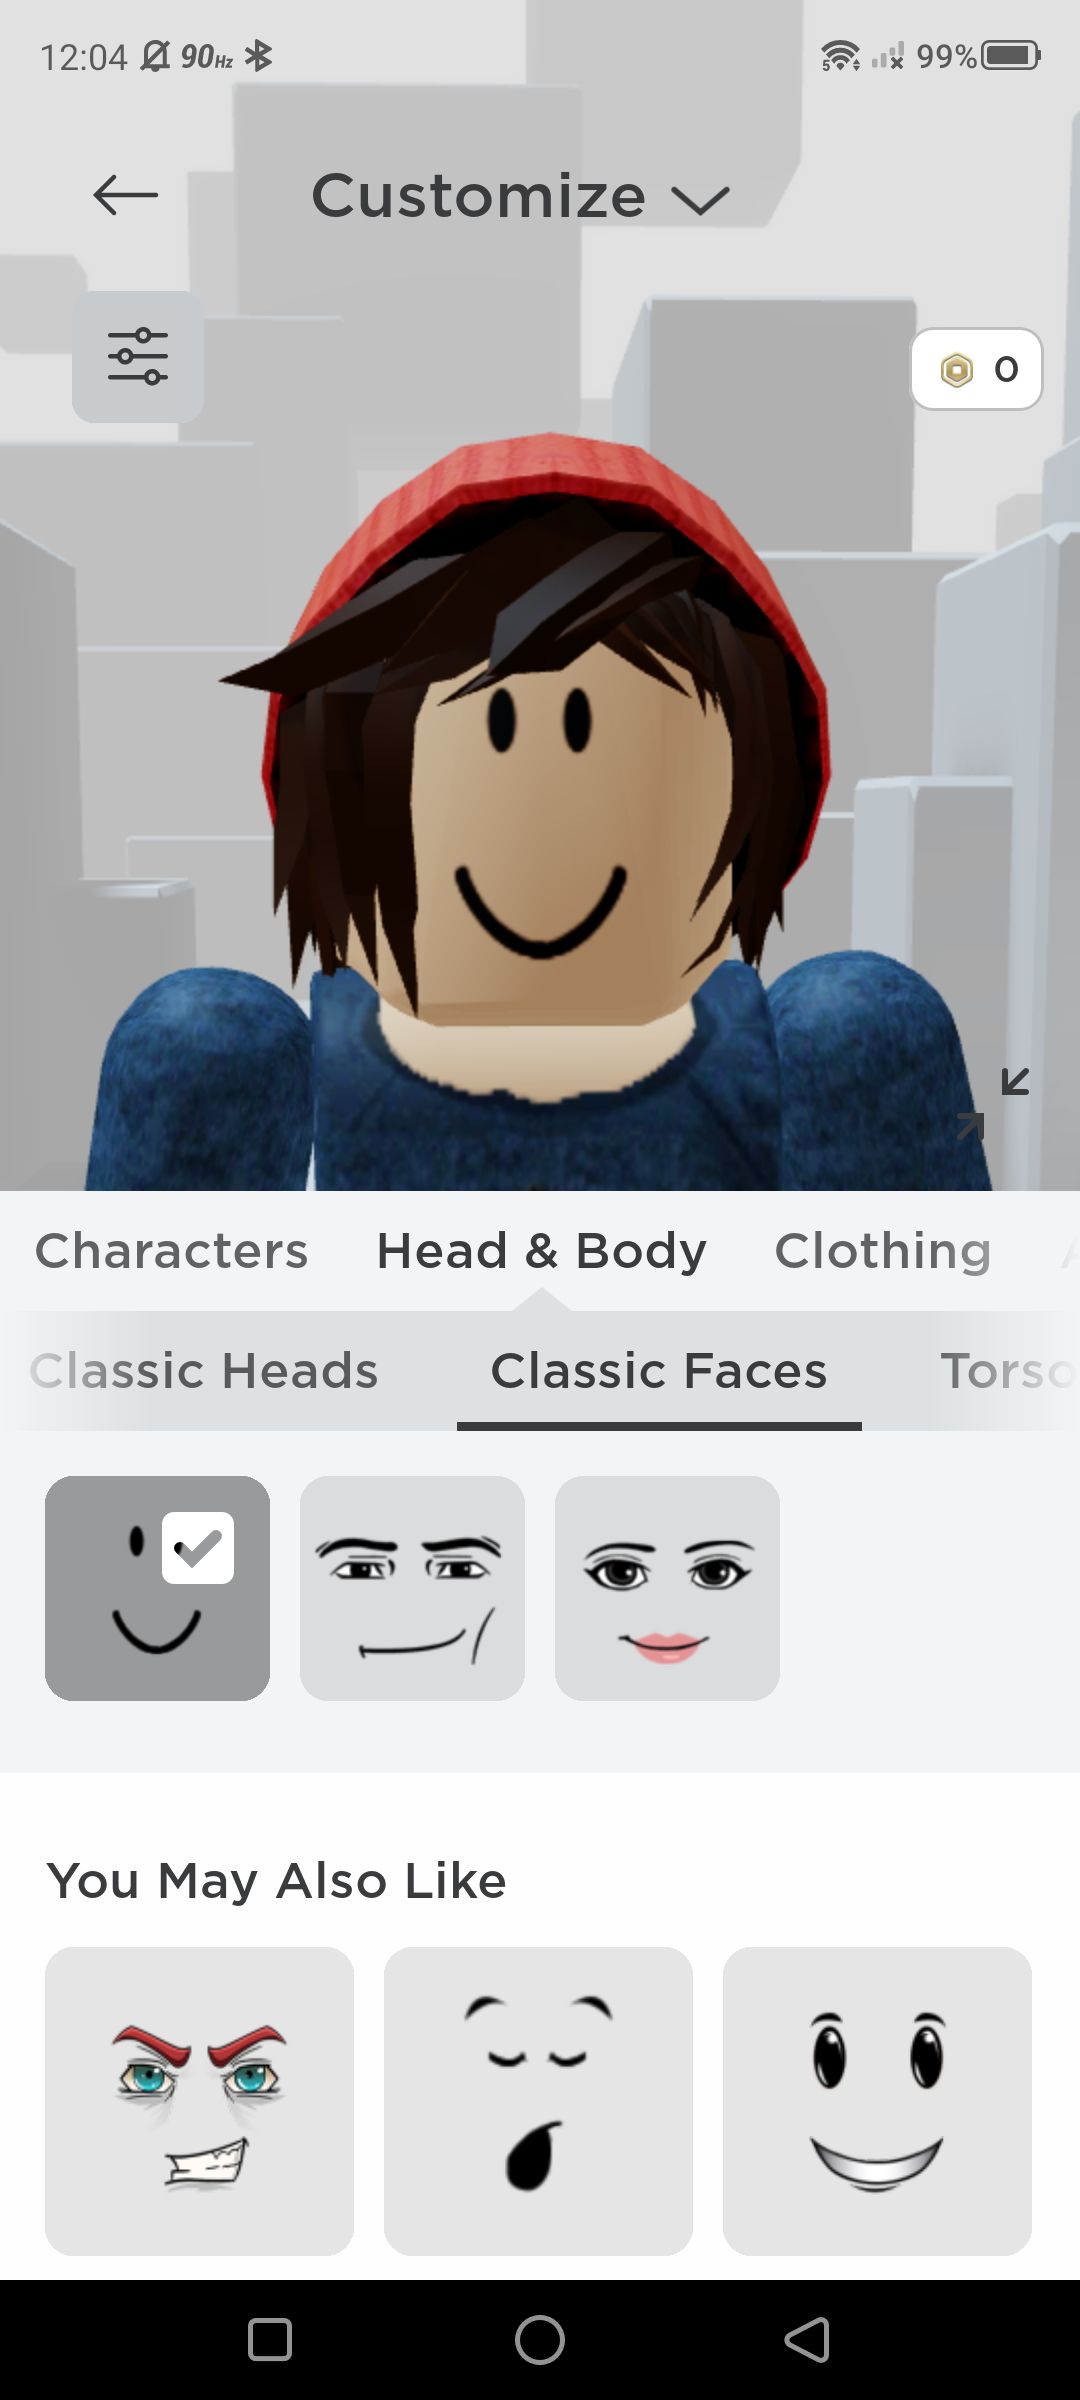 Captura de tela das opções de personalização do Roblox para expressões faciais